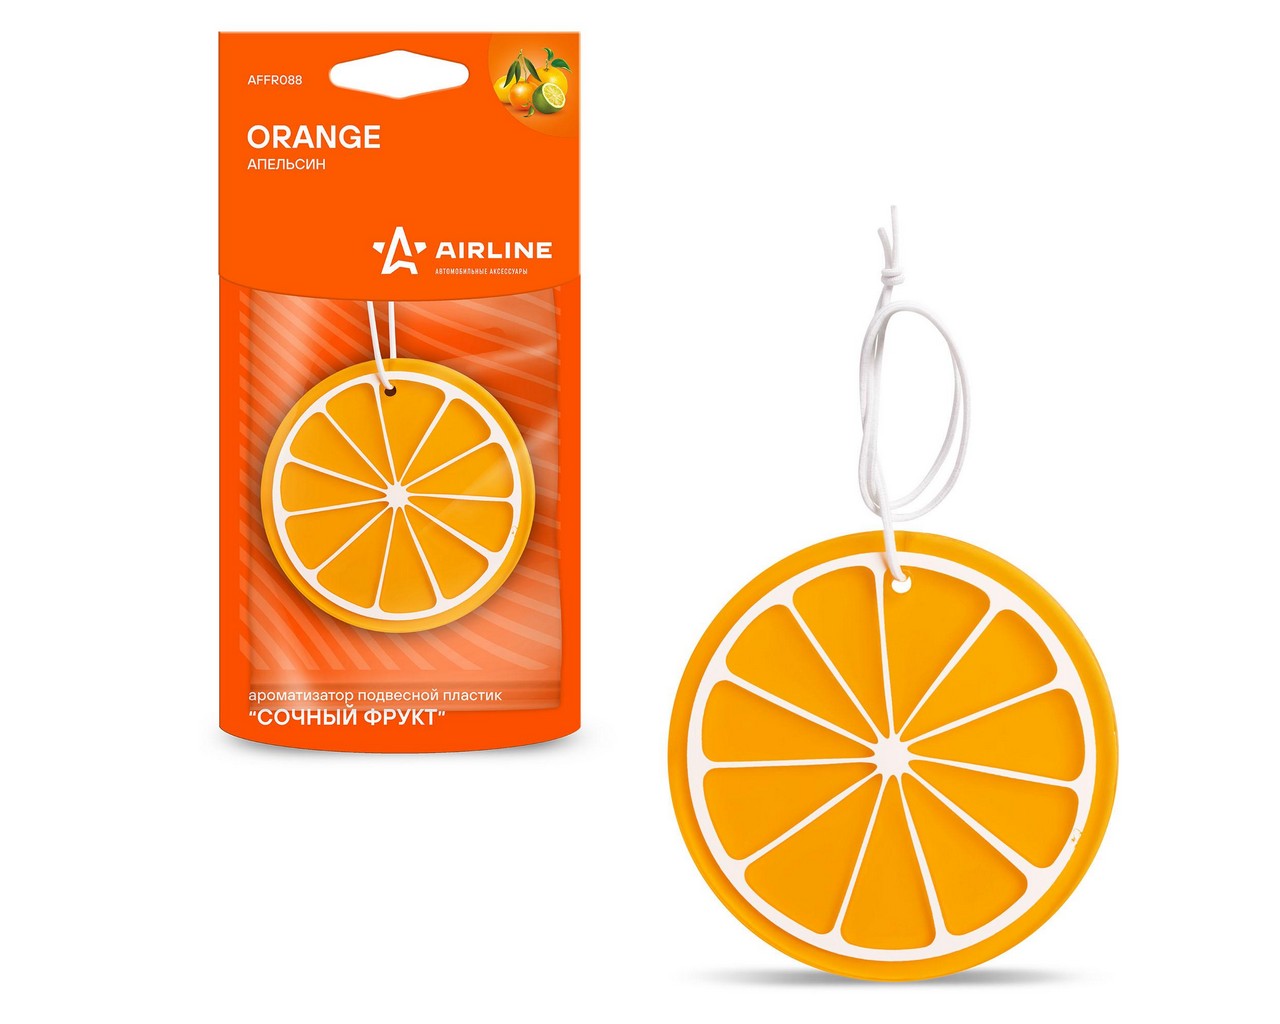 Ароматизатор подвесной (пластик сочный фрукт) апельсин (AIRLINE) фото 1